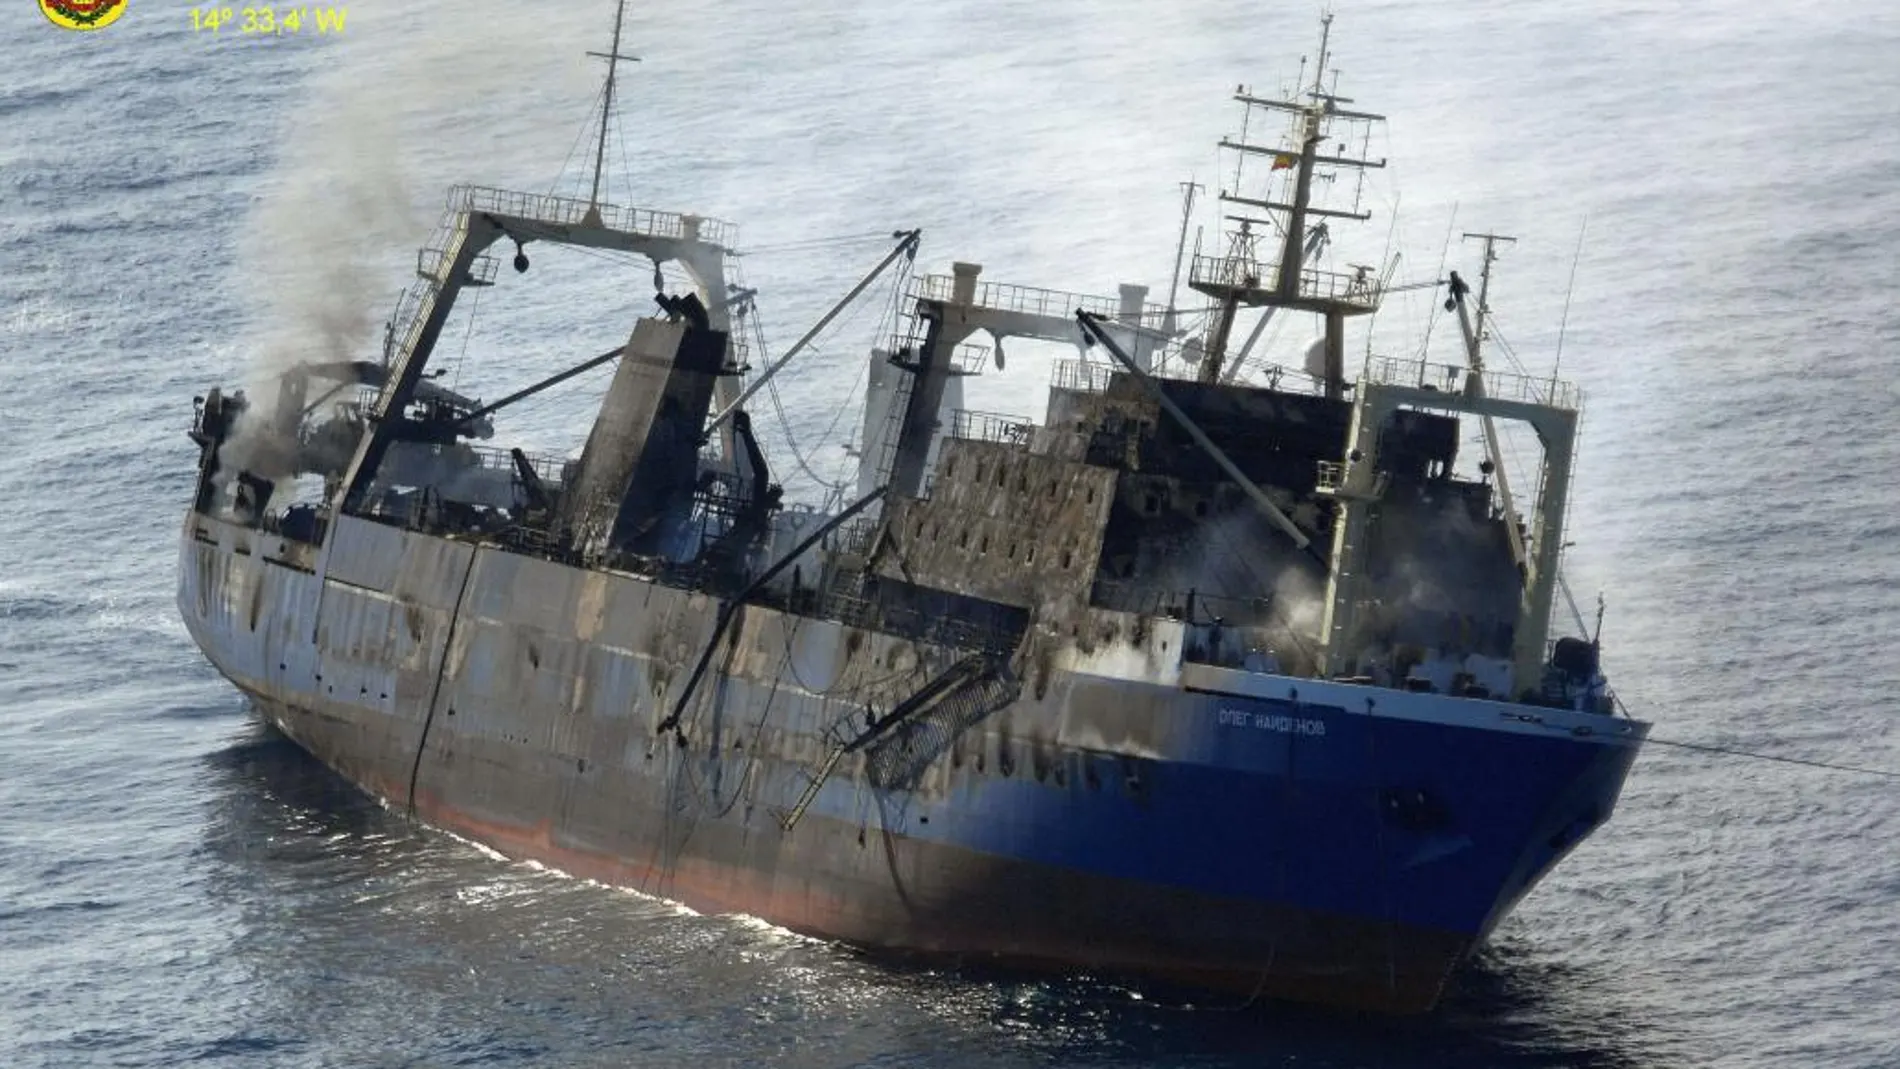 El pesquero ruso "Oleg Naidenov"fue remolcado a alta mar tras sufrir un incendio a bordo en el puerto de Las Palmas de Gran Canaria